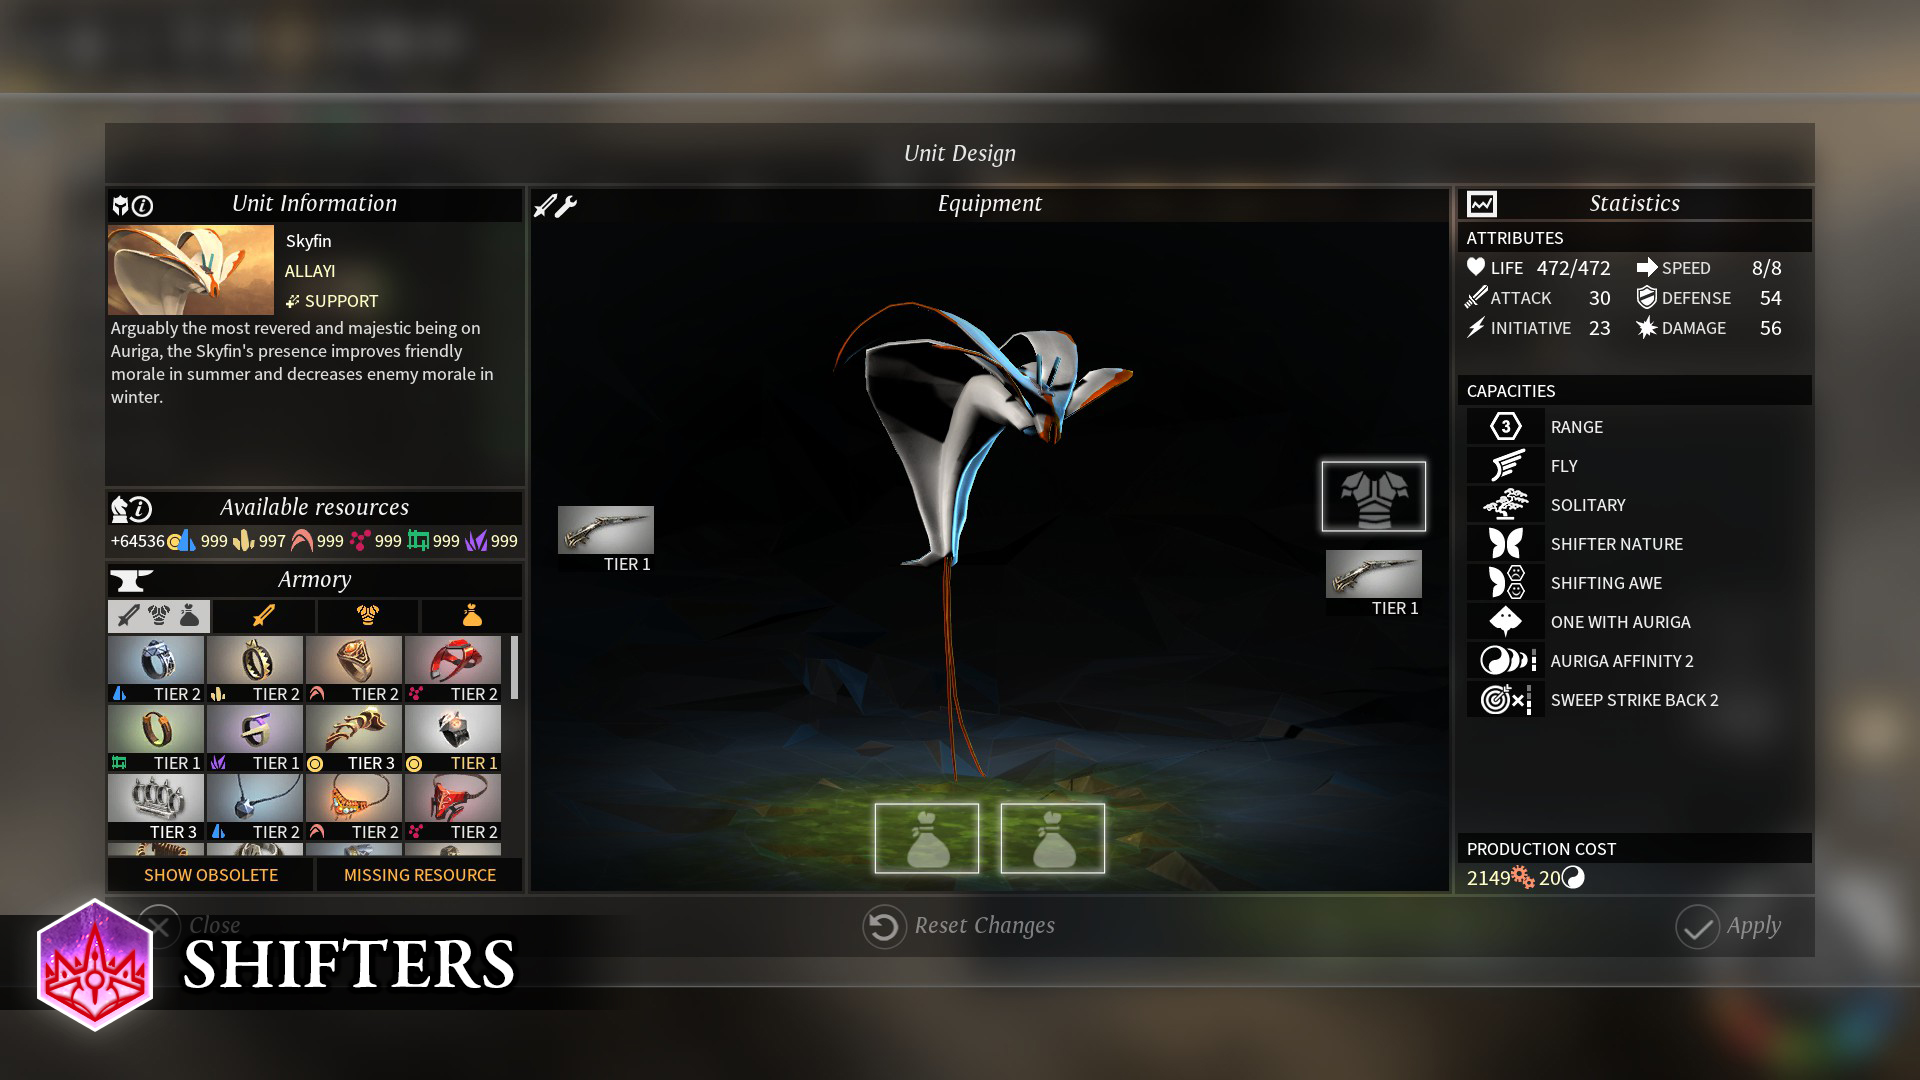 ENDLESS Legend - Shifters screenshot